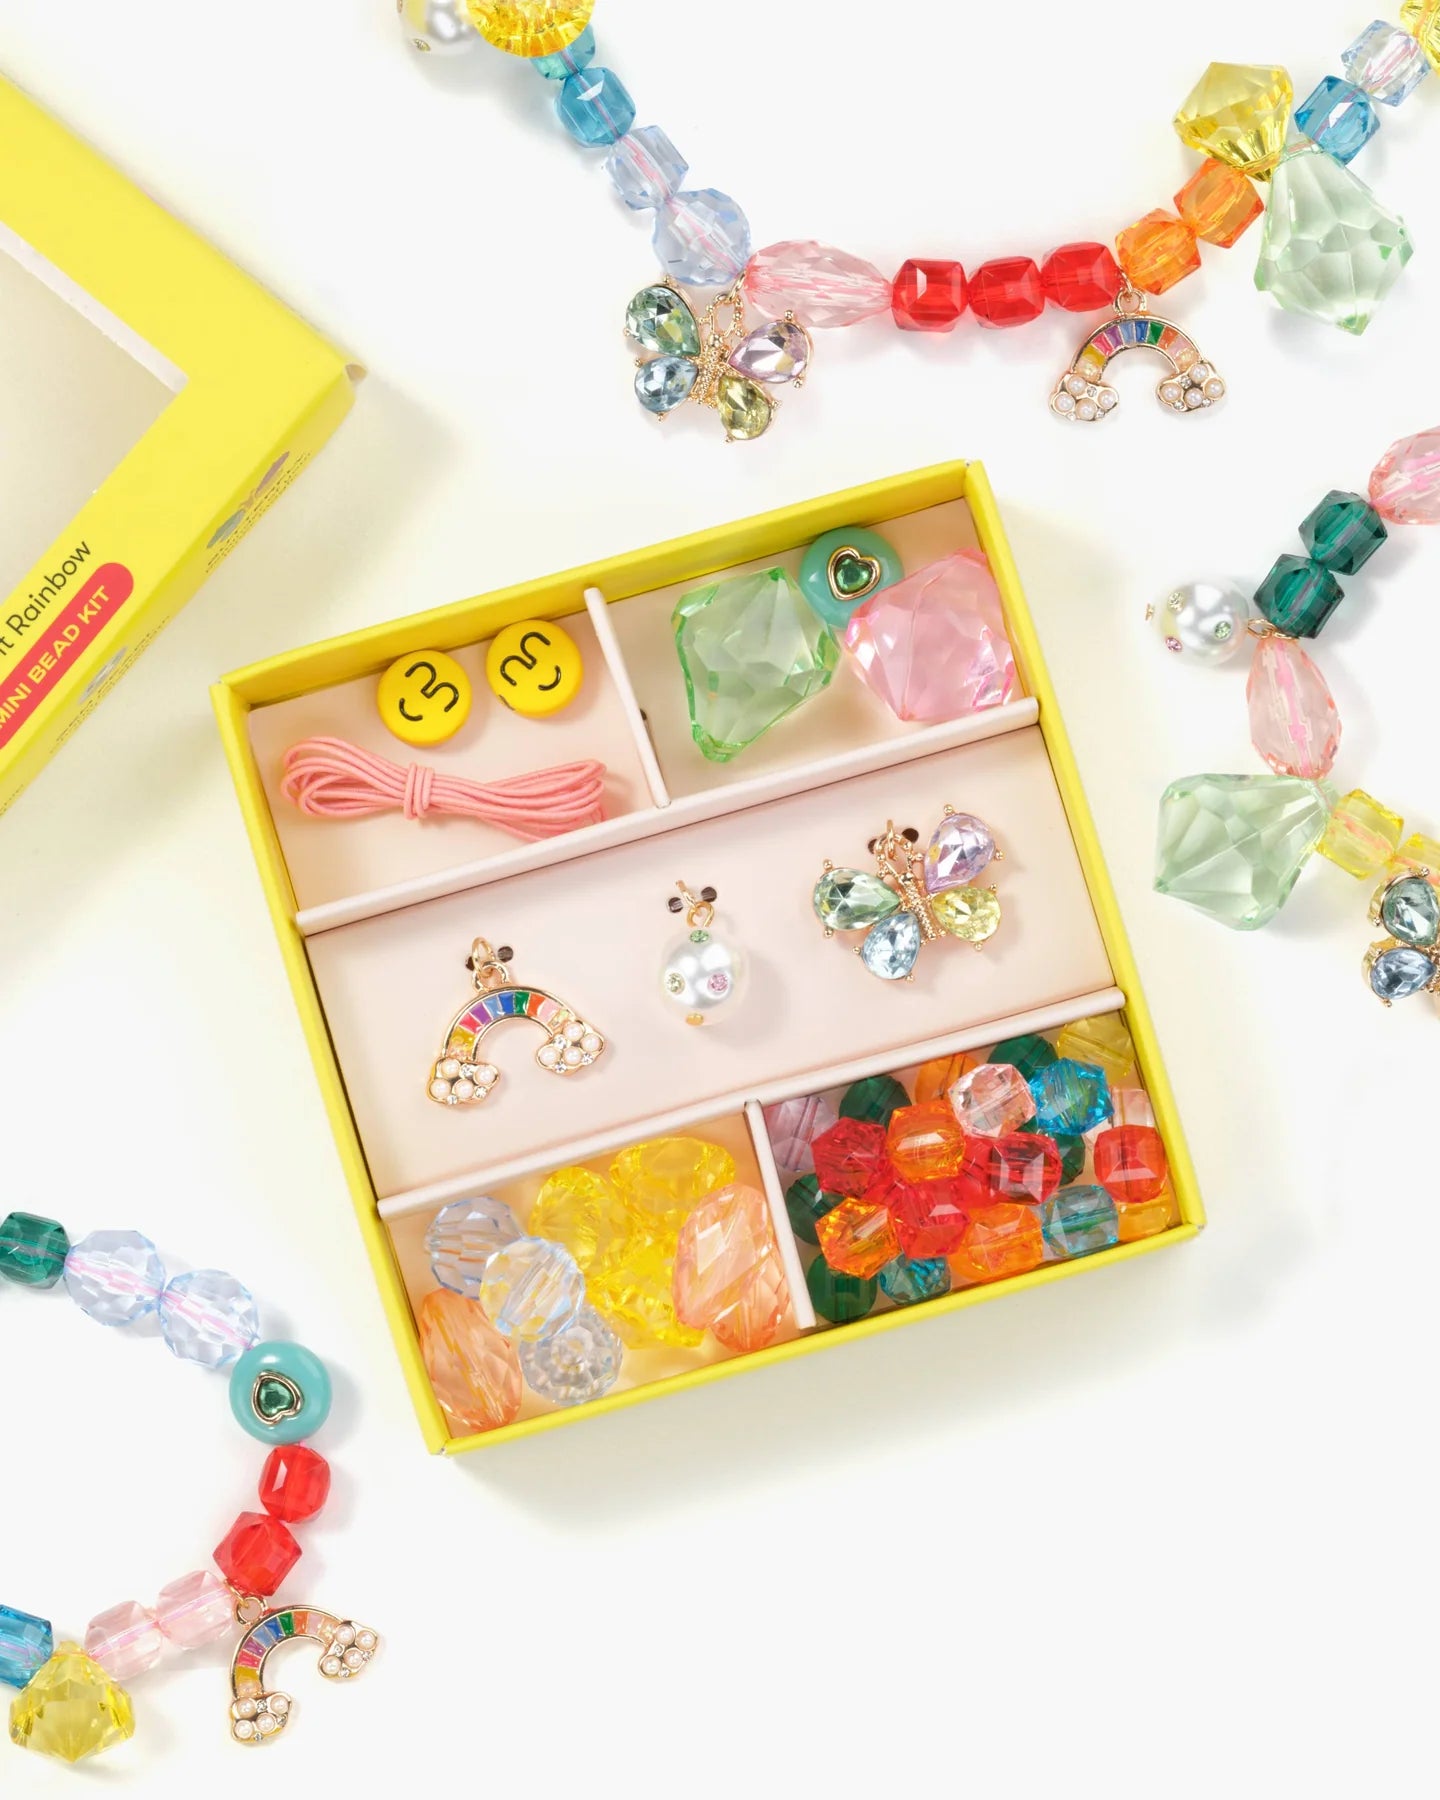 Mini DIY Bead Kit Make It Rainbow